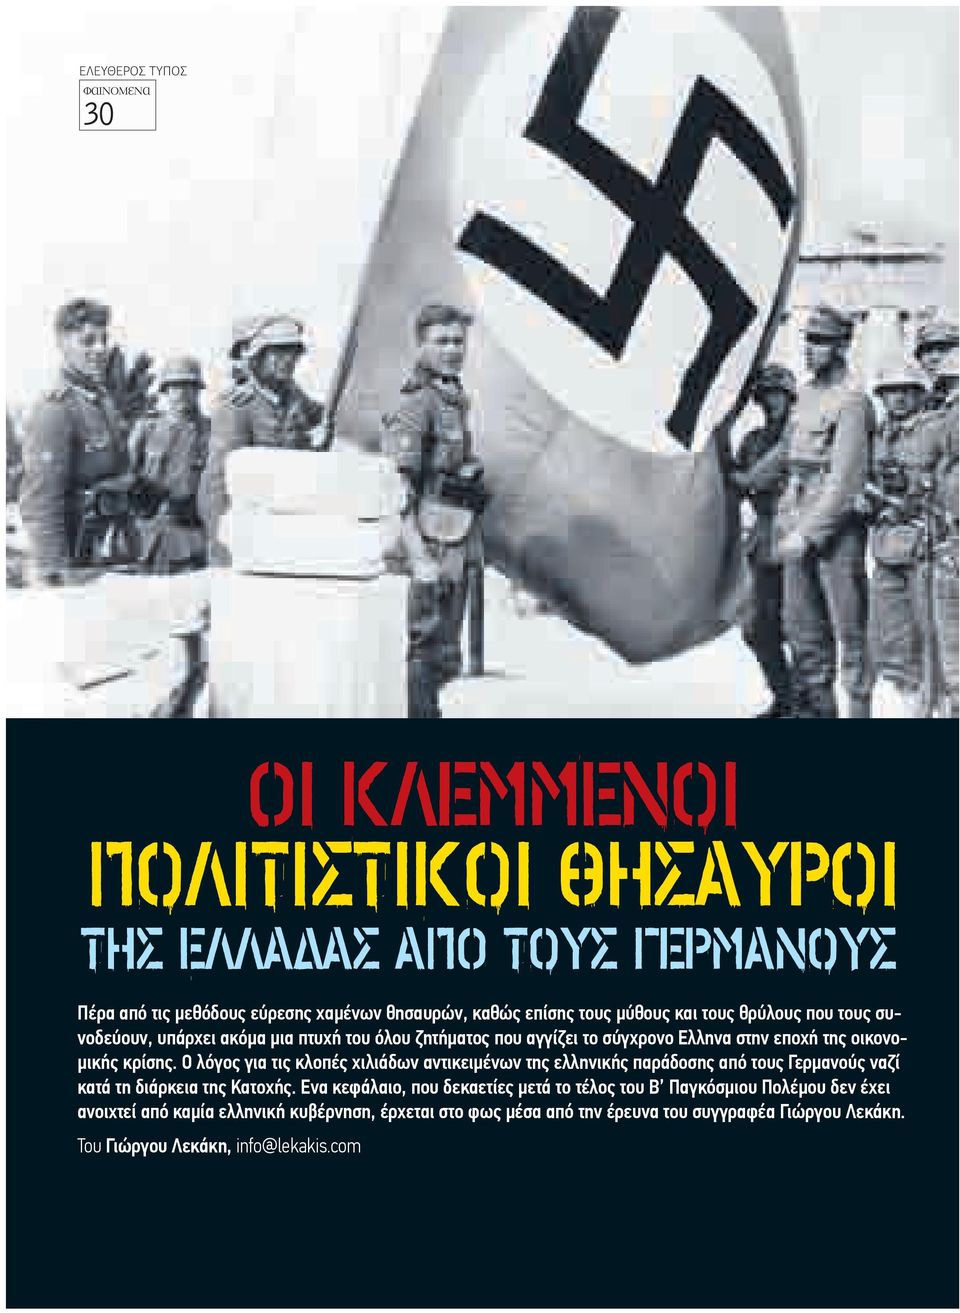 Ο λόγος για τις κλοπές χιλιάδων αντικειµένων της ελληνικής παράδοσης από τους Γερµανούς ναζί κατά τη διάρκεια της Κατοχής.